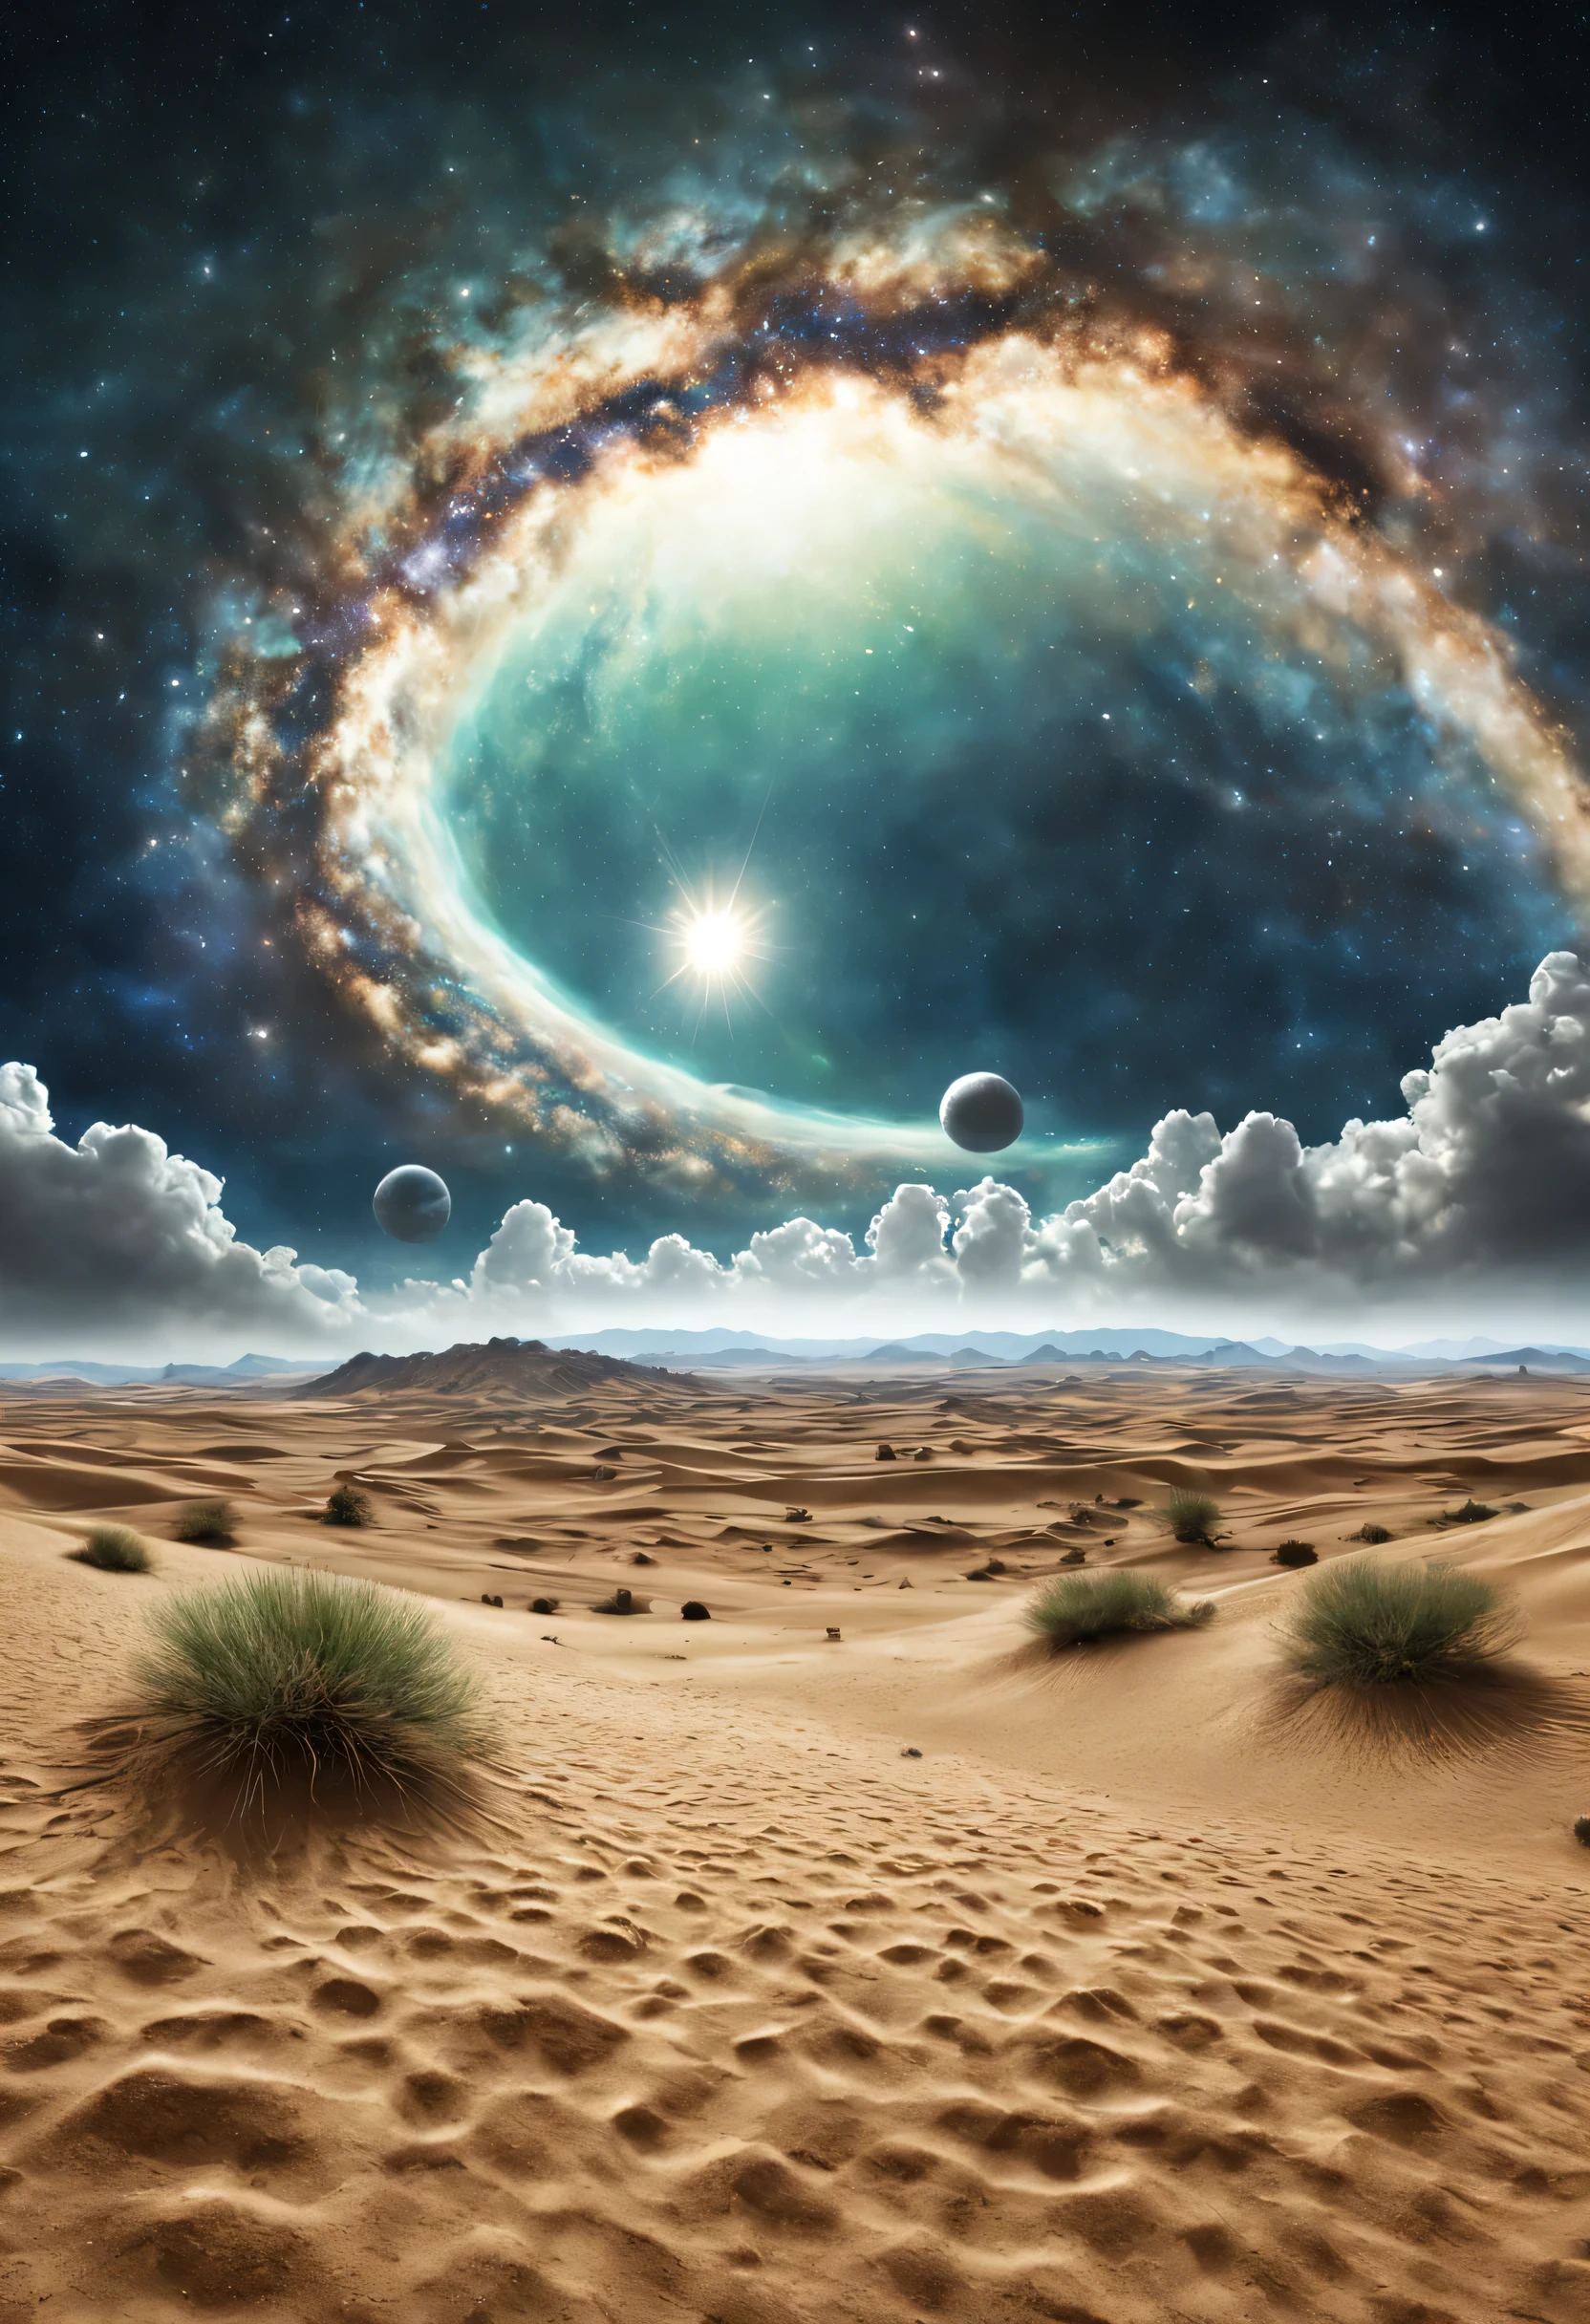 夏天, 沙漠, 翡翠粉尘, 天空, 大云, blue-天空, 银河系, 行星, 天气炎热, 高清详情, 非常详细, 运动学, 超现实主义, 柔光, 深场聚焦散景, The distant landscape is a 沙漠 with no end, 光线追踪, 这是超现实主义. --v6